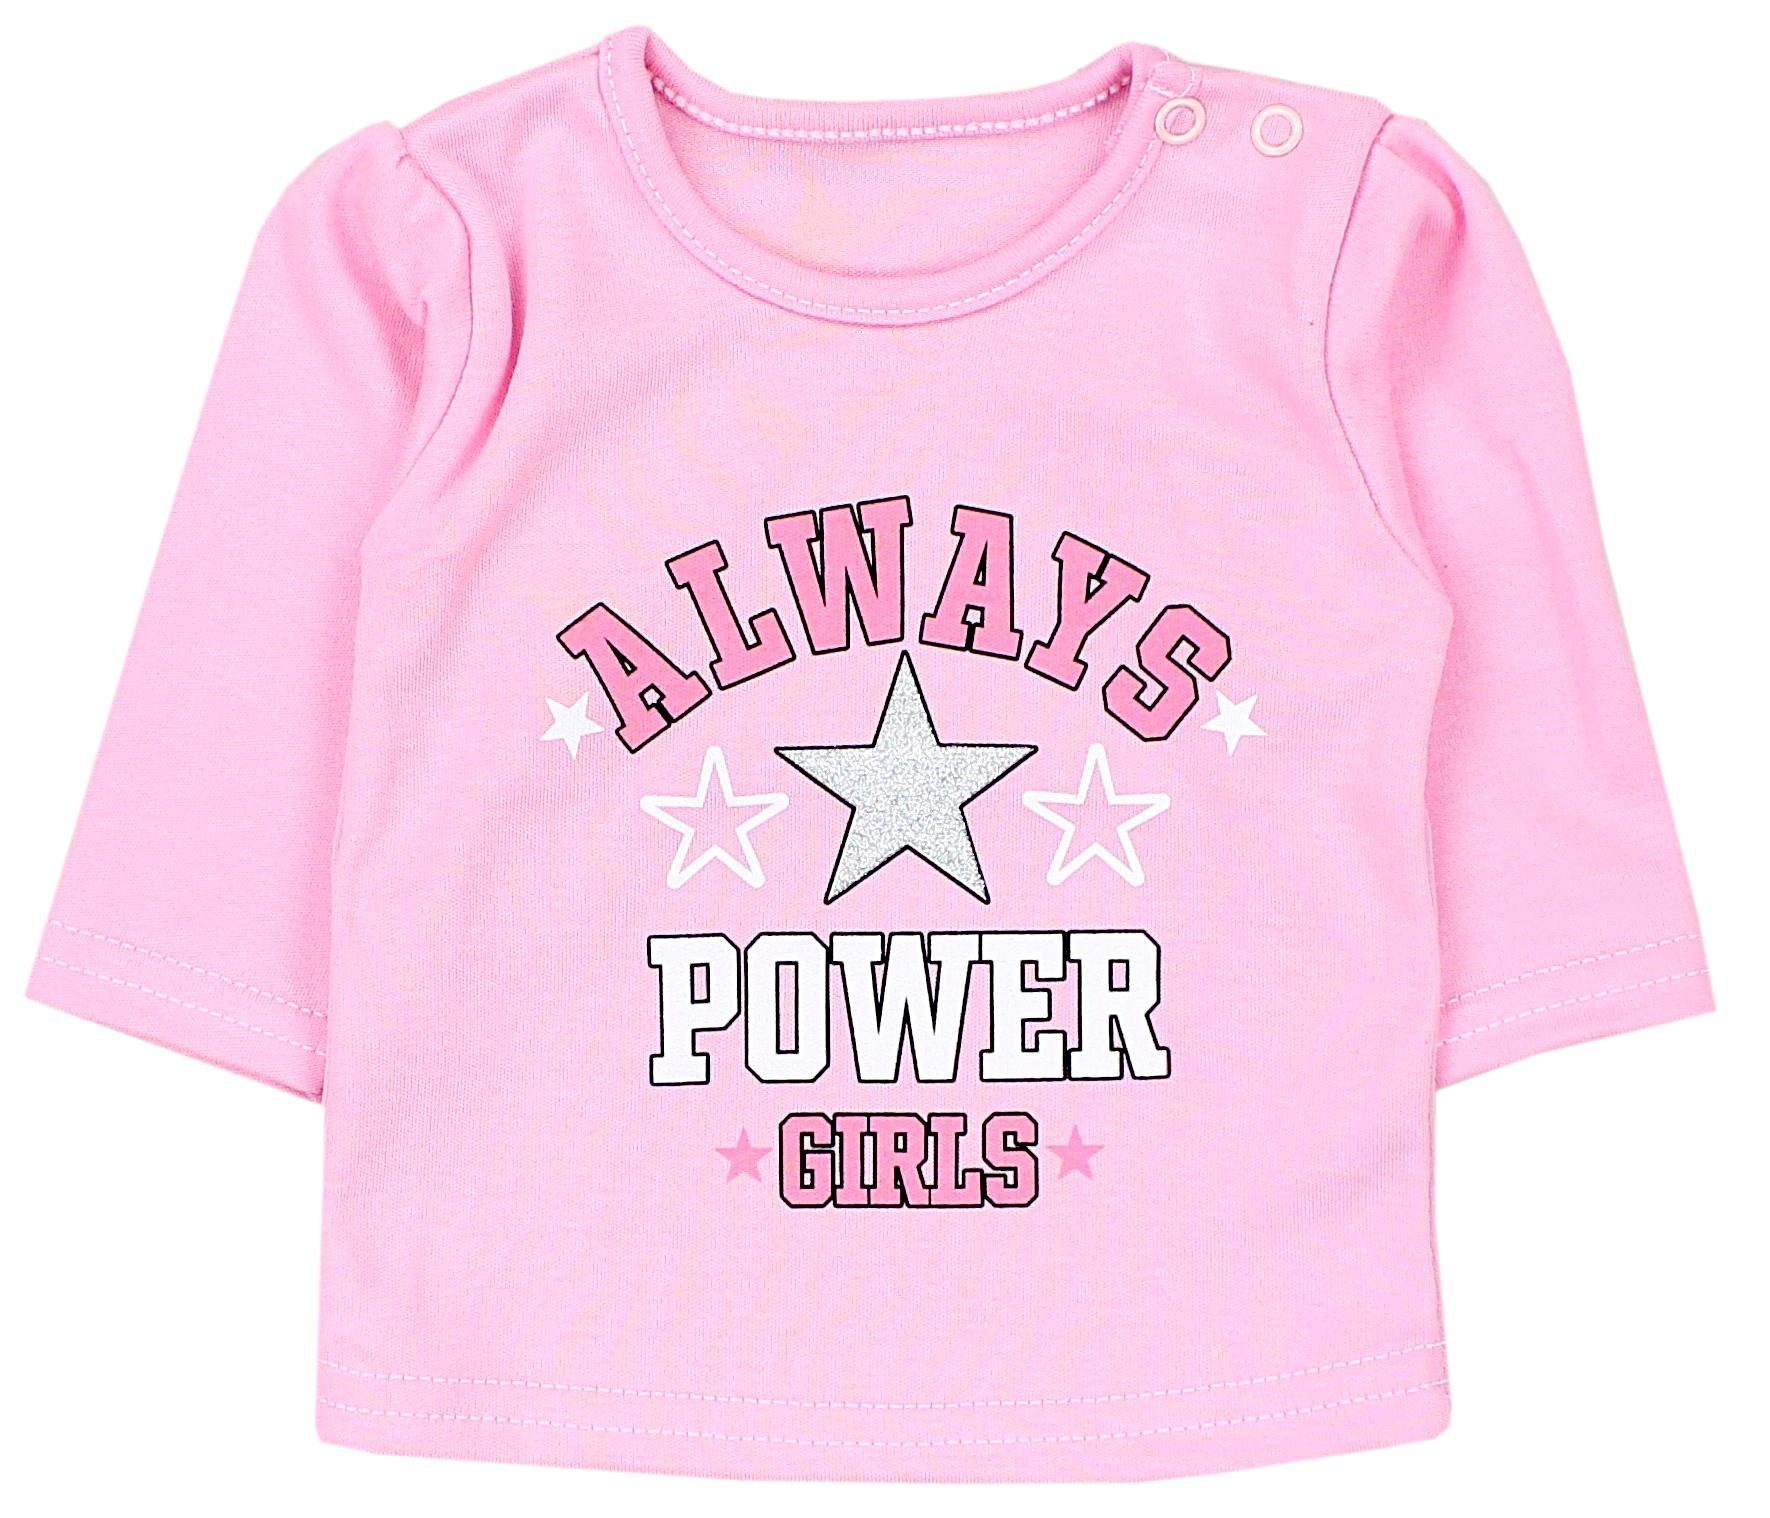 Girls Baby Mama's Nice Mintgrün Aufdruck Rosa Unisex 3er Rundhalsshirt Power mit Set Langarmshirt TupTam Teddy TupTam Aprikose Mini Spruch